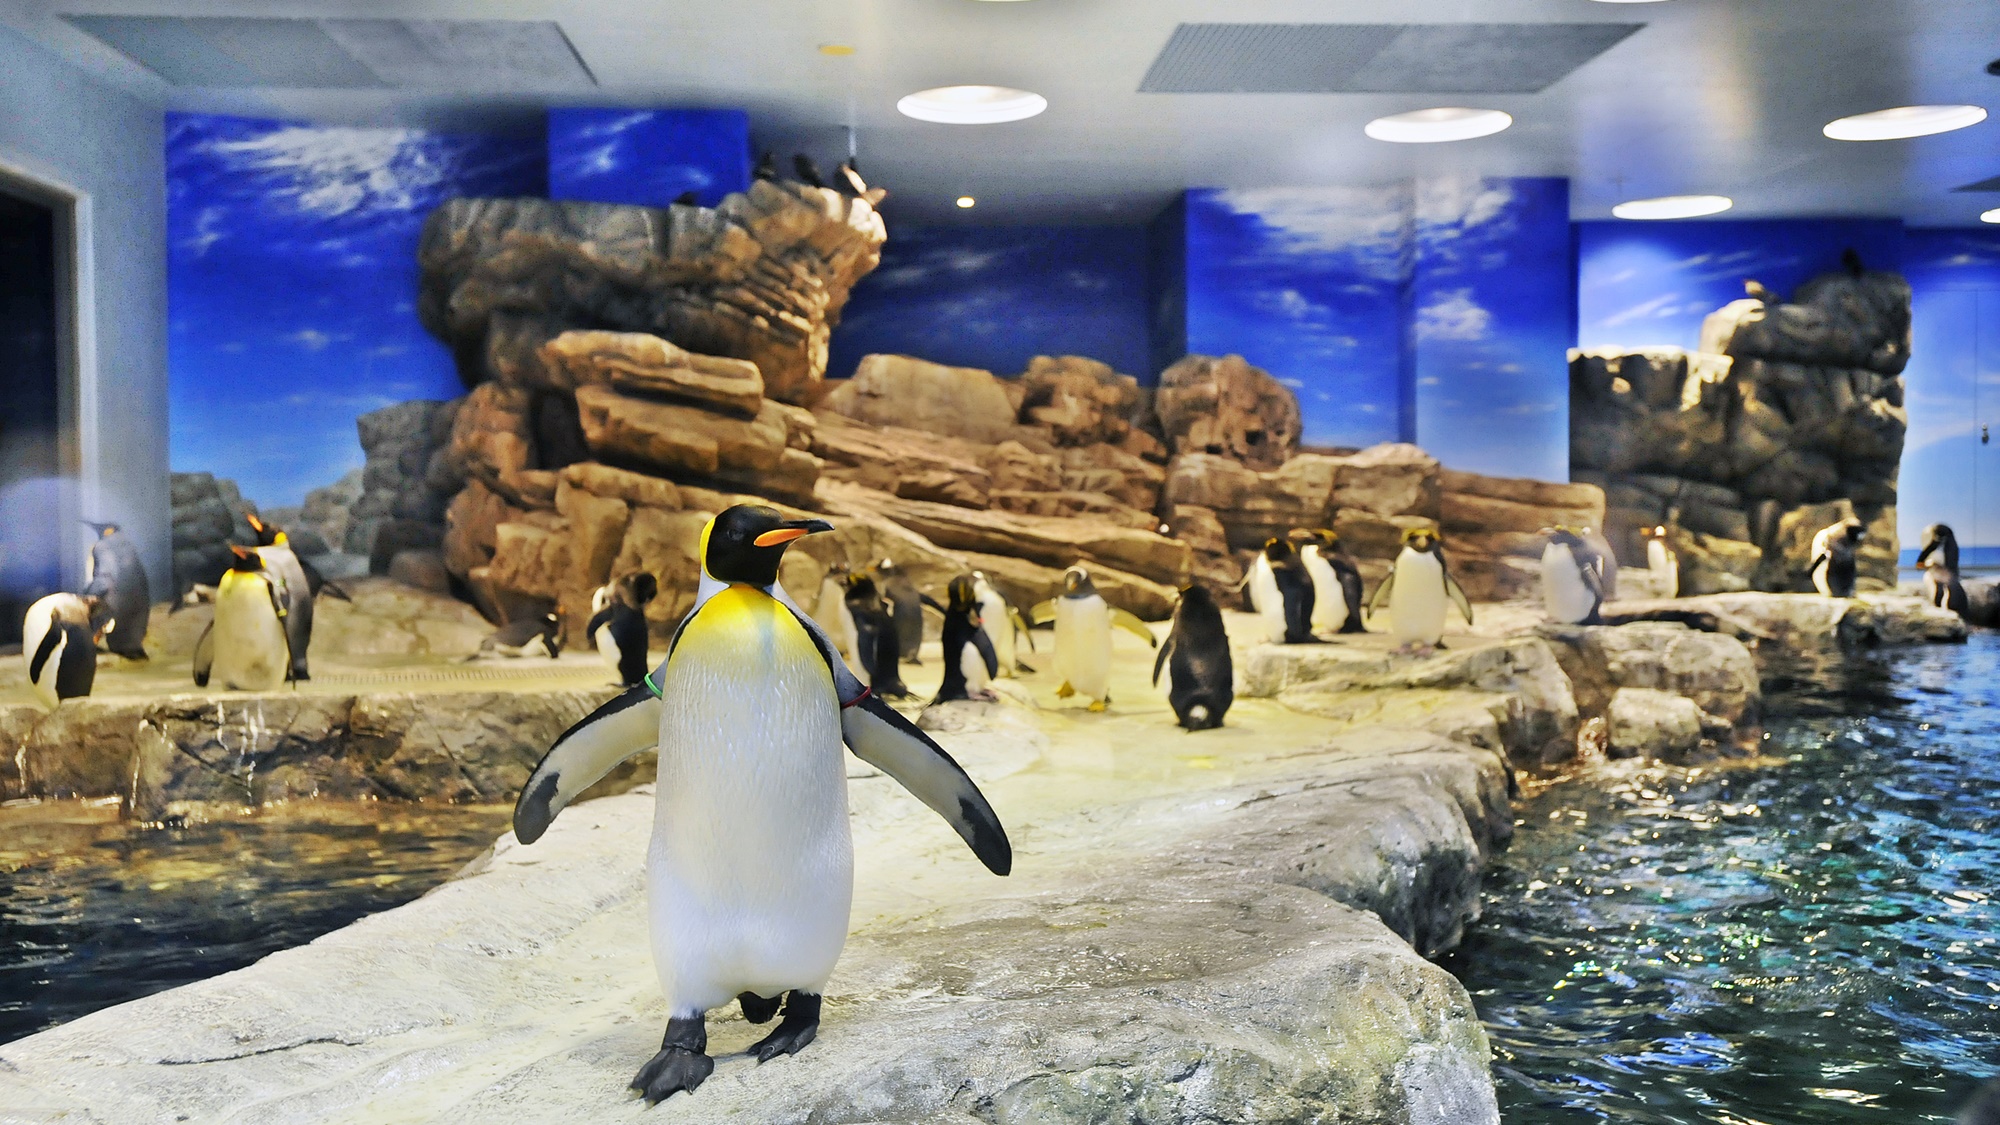 【海響館】ペンギン達に会いに「ペンギン村」へどうぞ。当館から車で約10分。